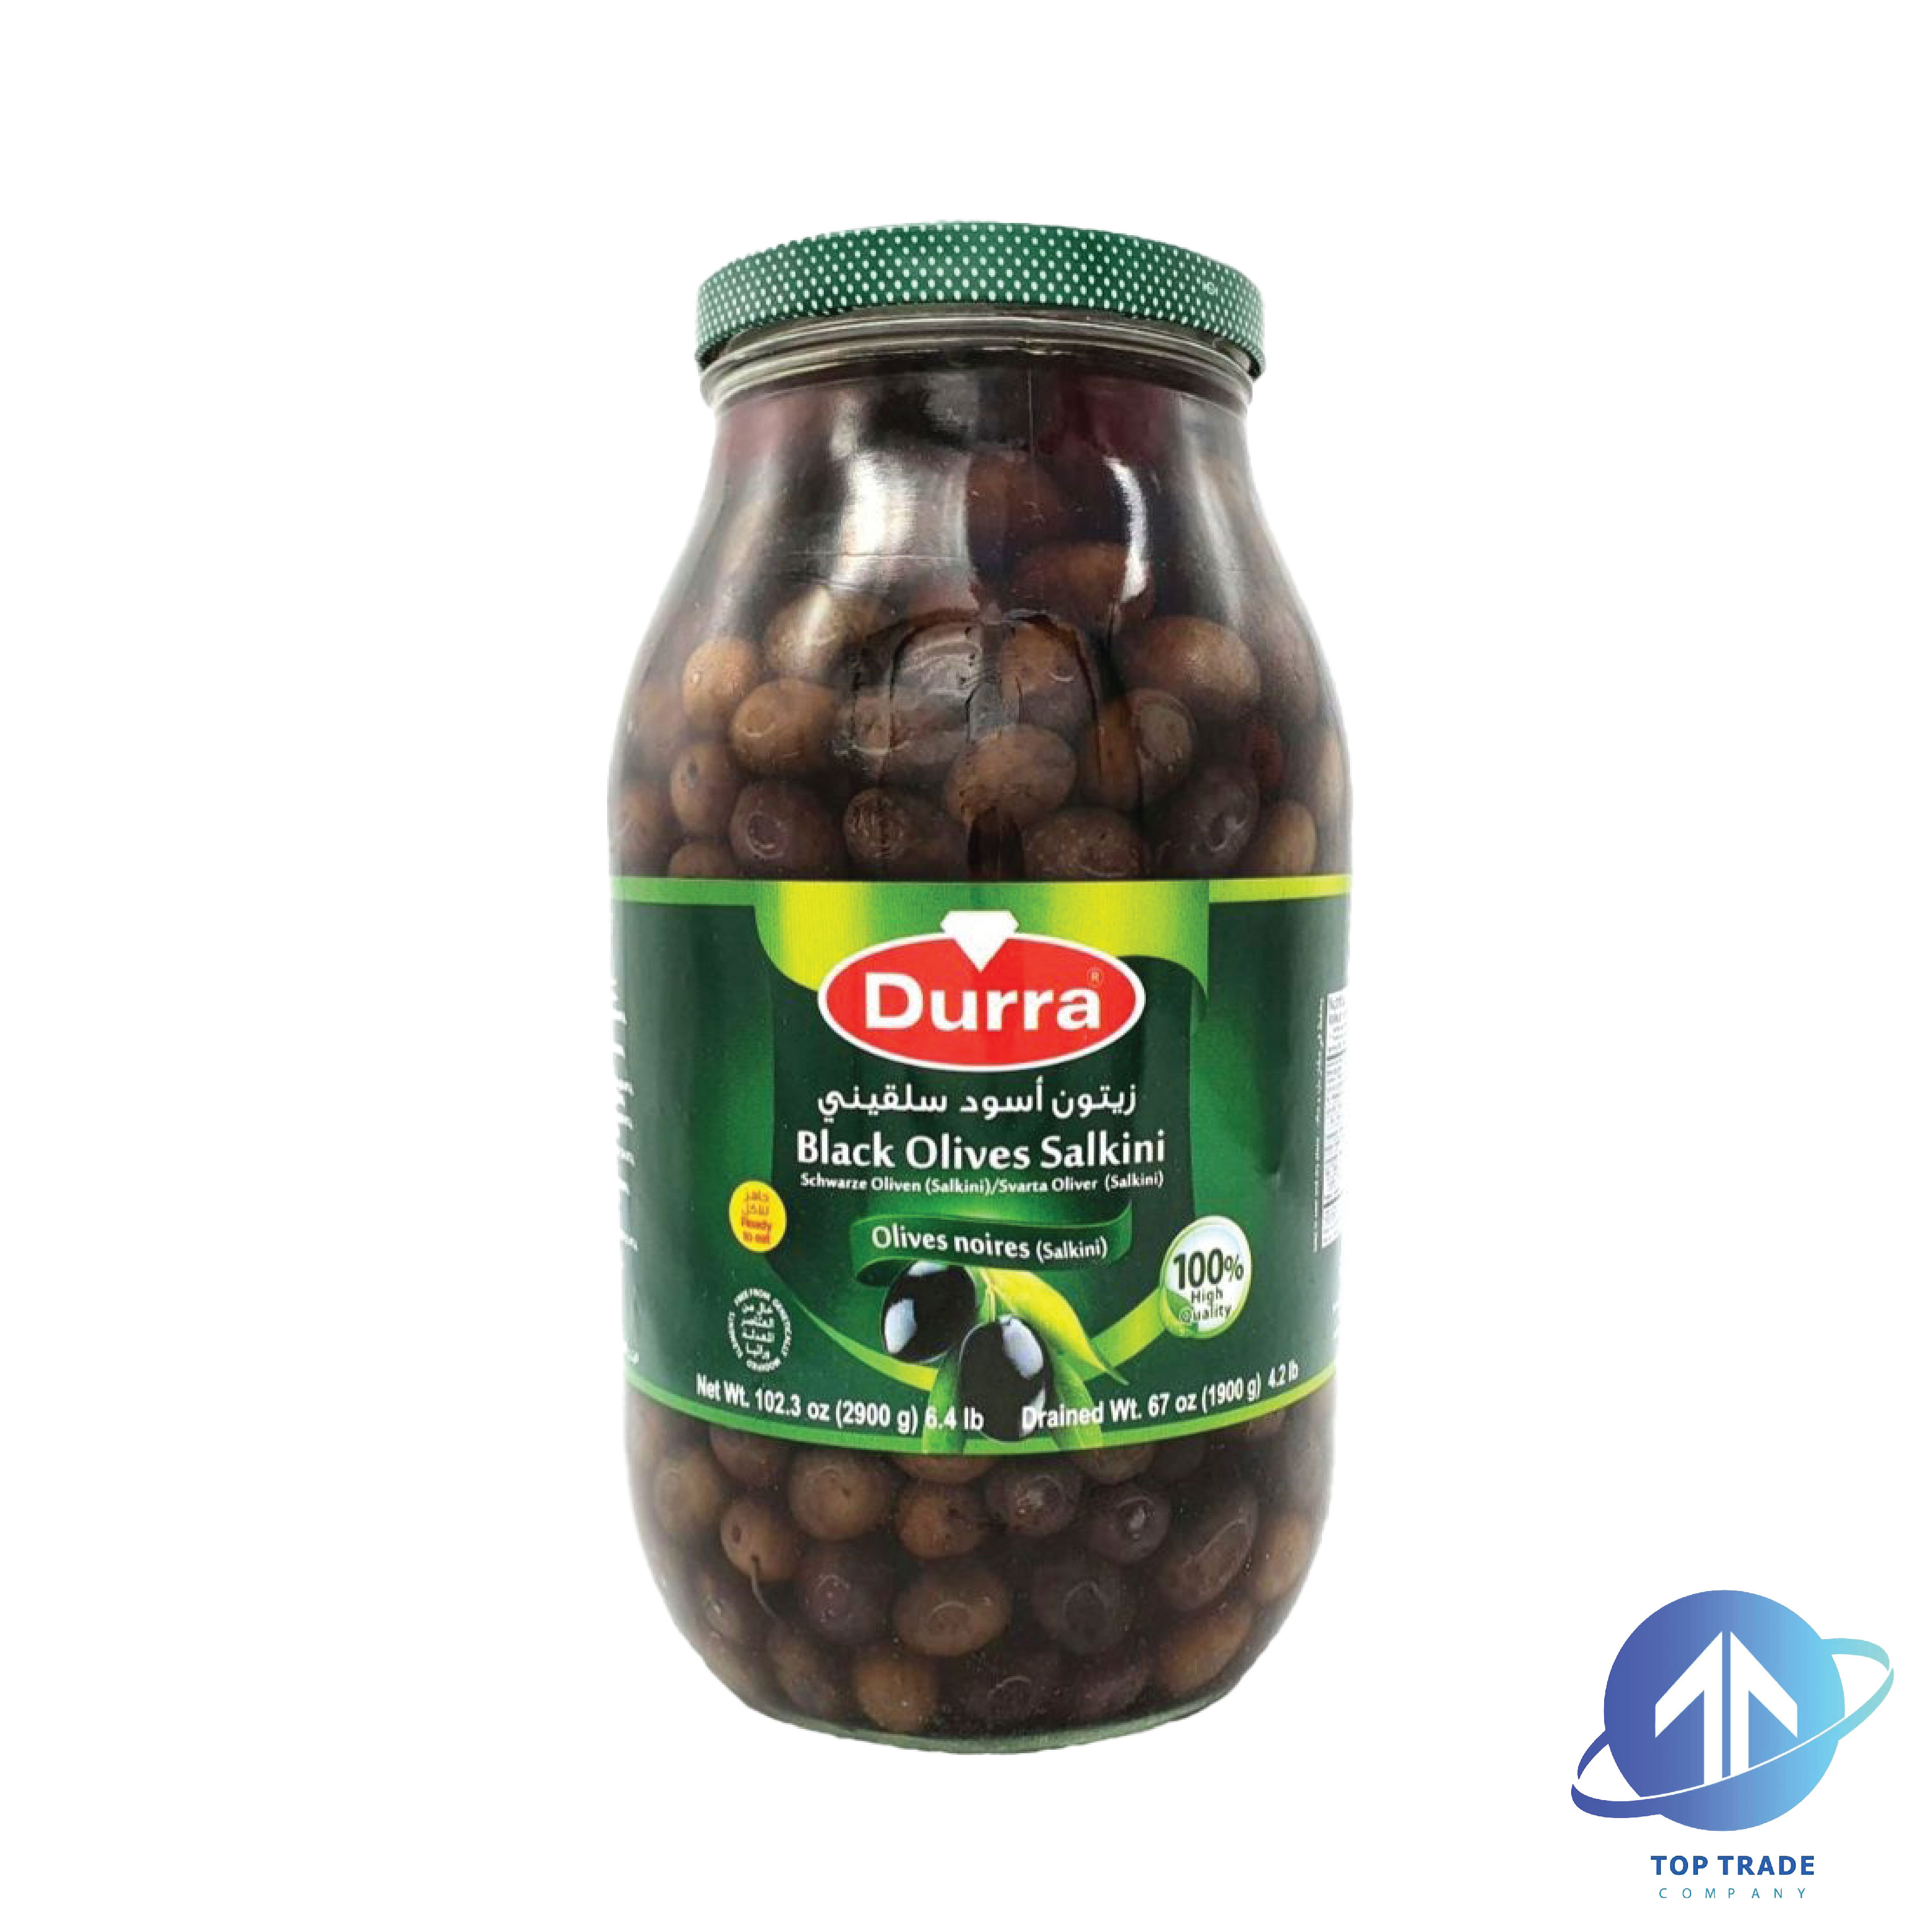 Durra Black Olives Salkini 2900gr 